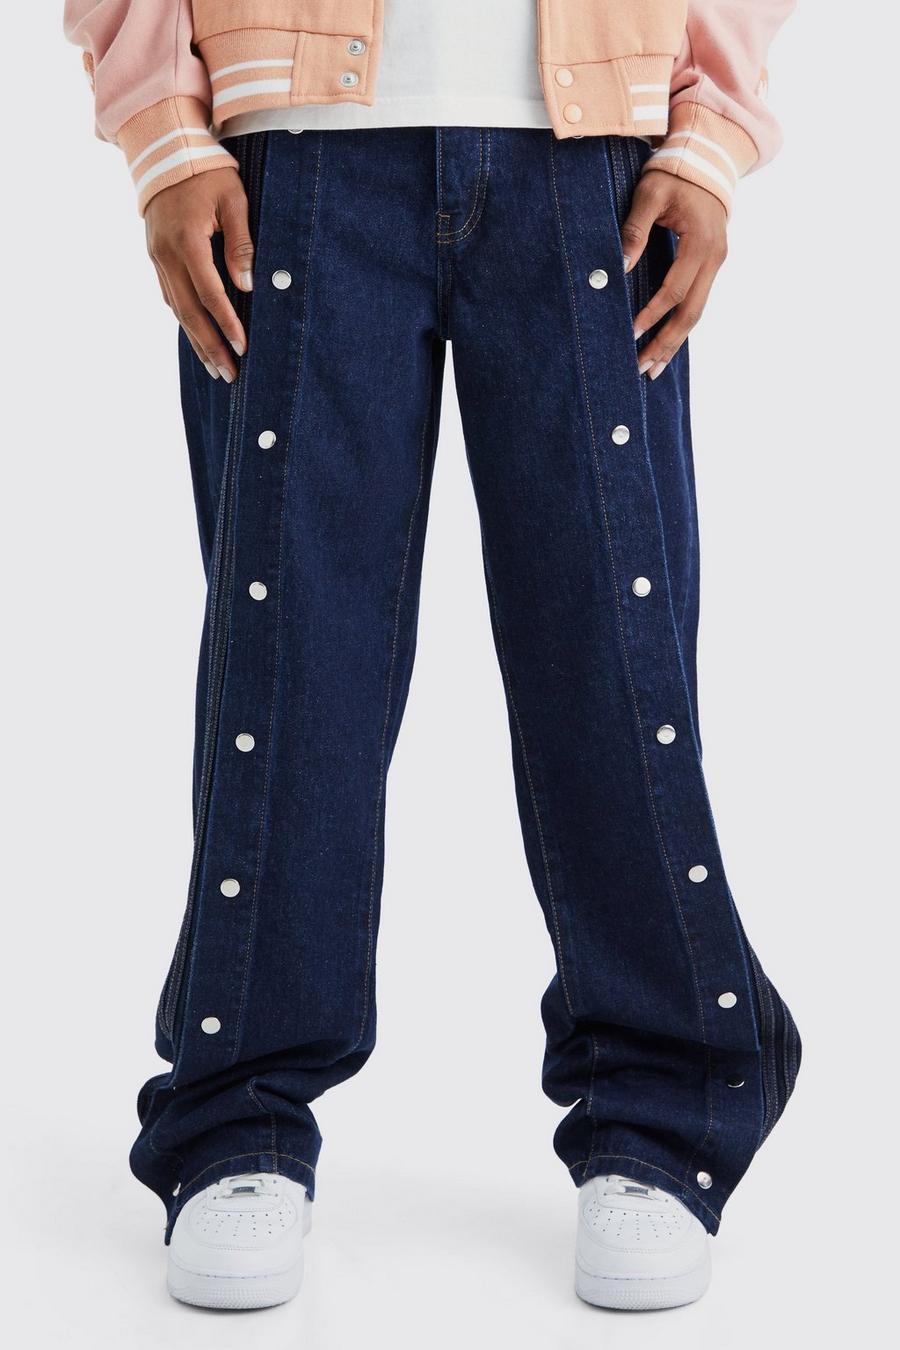 Lockere Jeans mit Druckknöpfen, Indigo blue